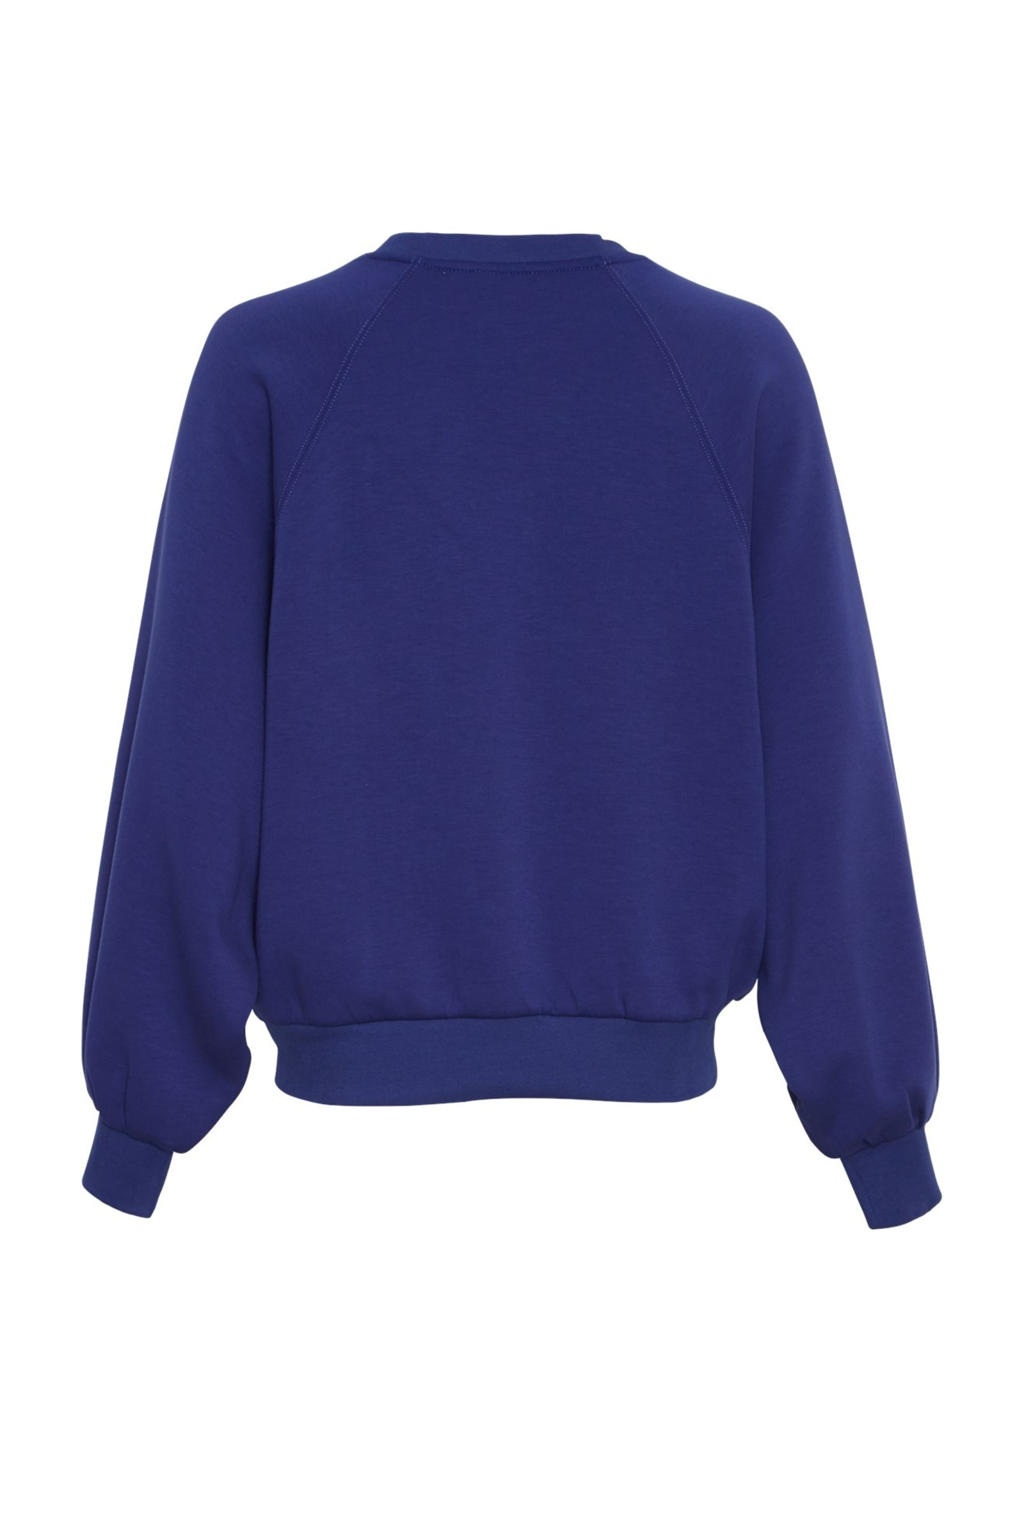 MSCH Copenhagen sweater donkerblauw | wehkamp